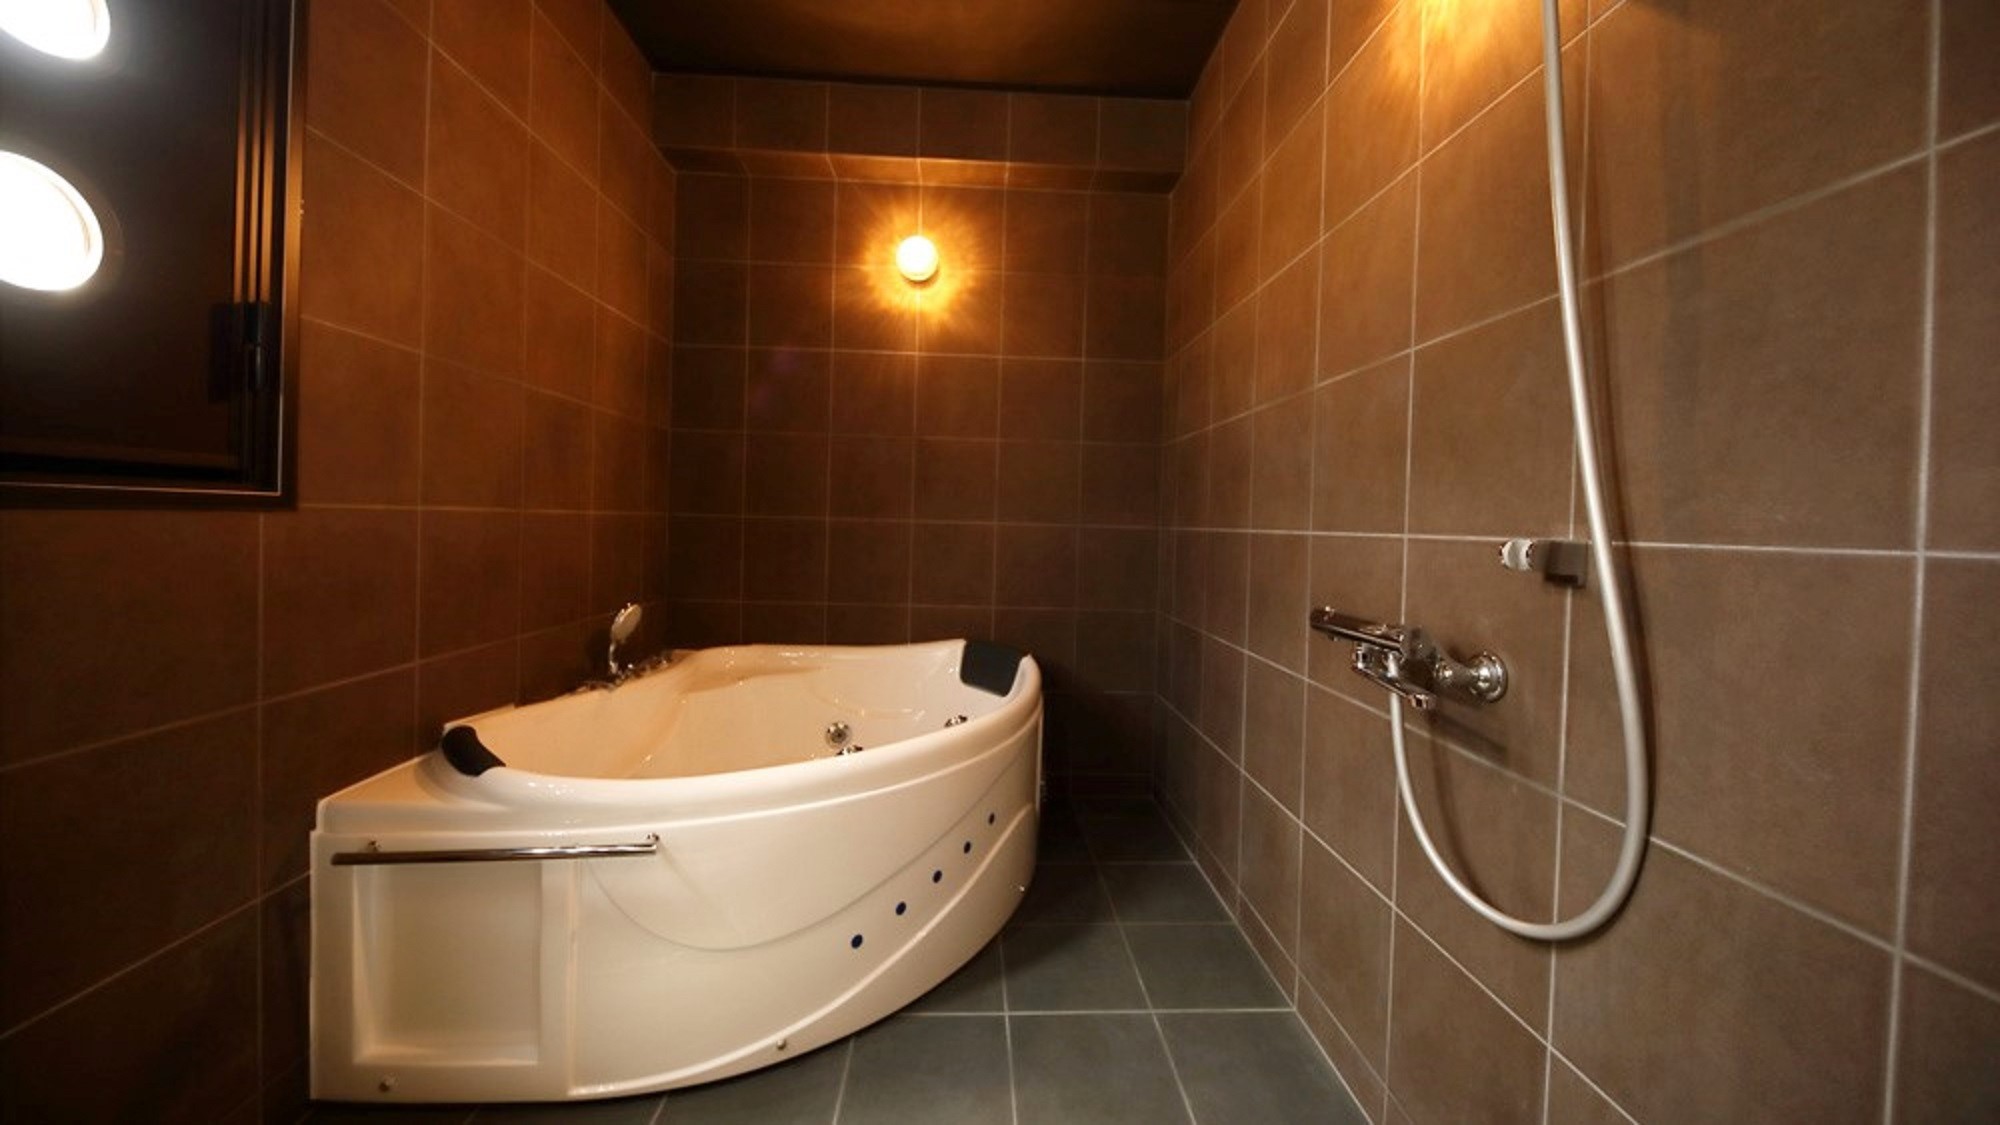 【ロイヤルスイート(2F)】モダンな雰囲気溢れるジャグジー付きの浴室